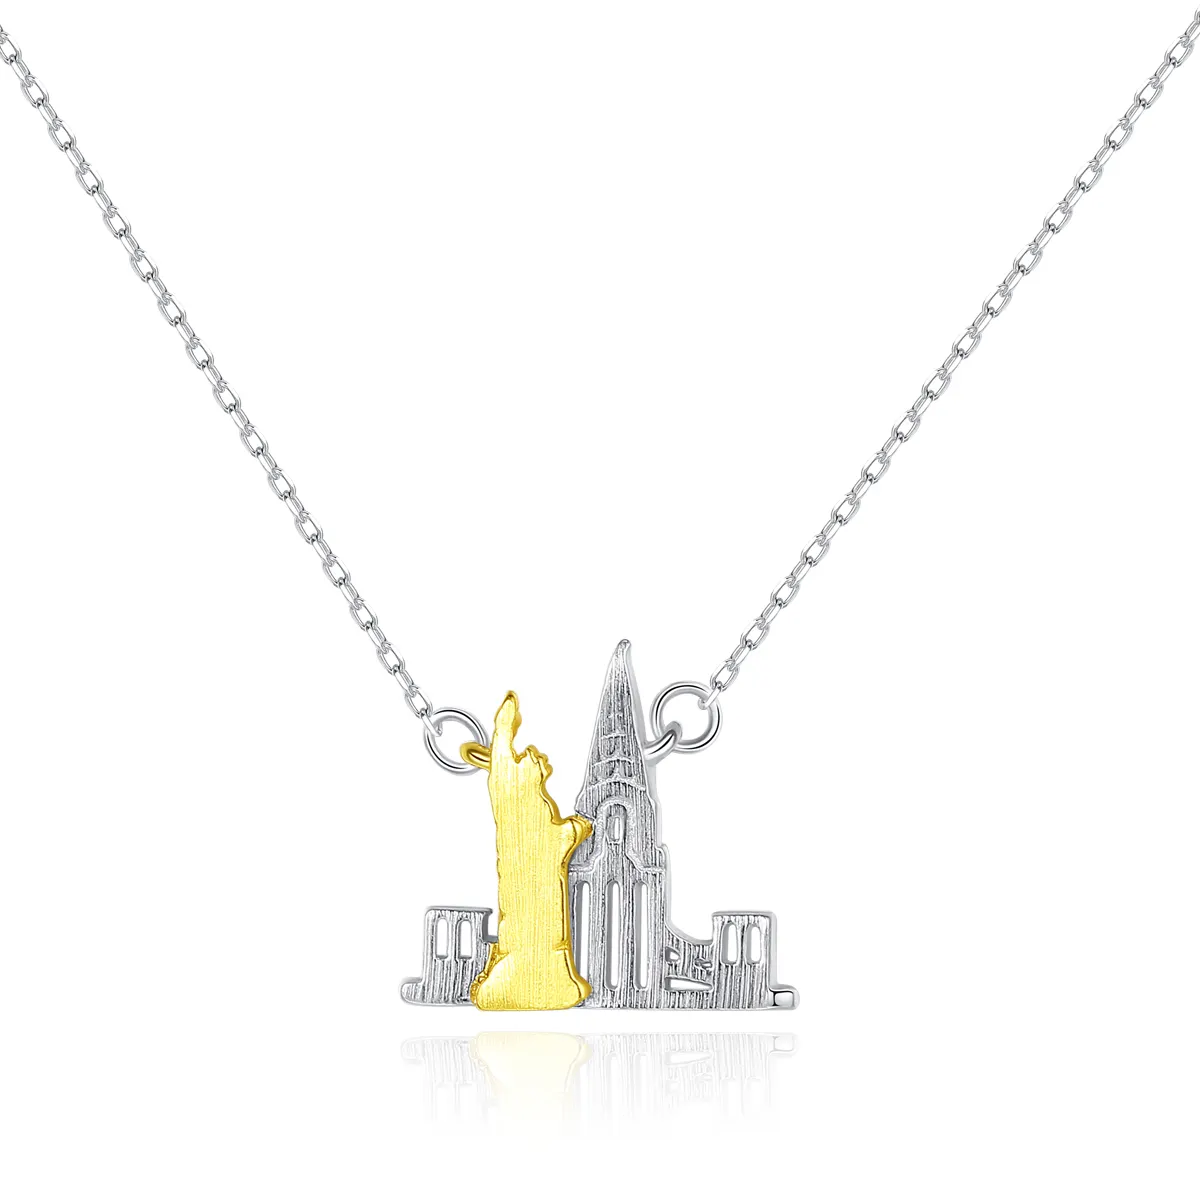 CZCITY nuevo Metal cepillado 925 joyería de plata esterlina doble chapado en oro Castillo colgante collar de moda